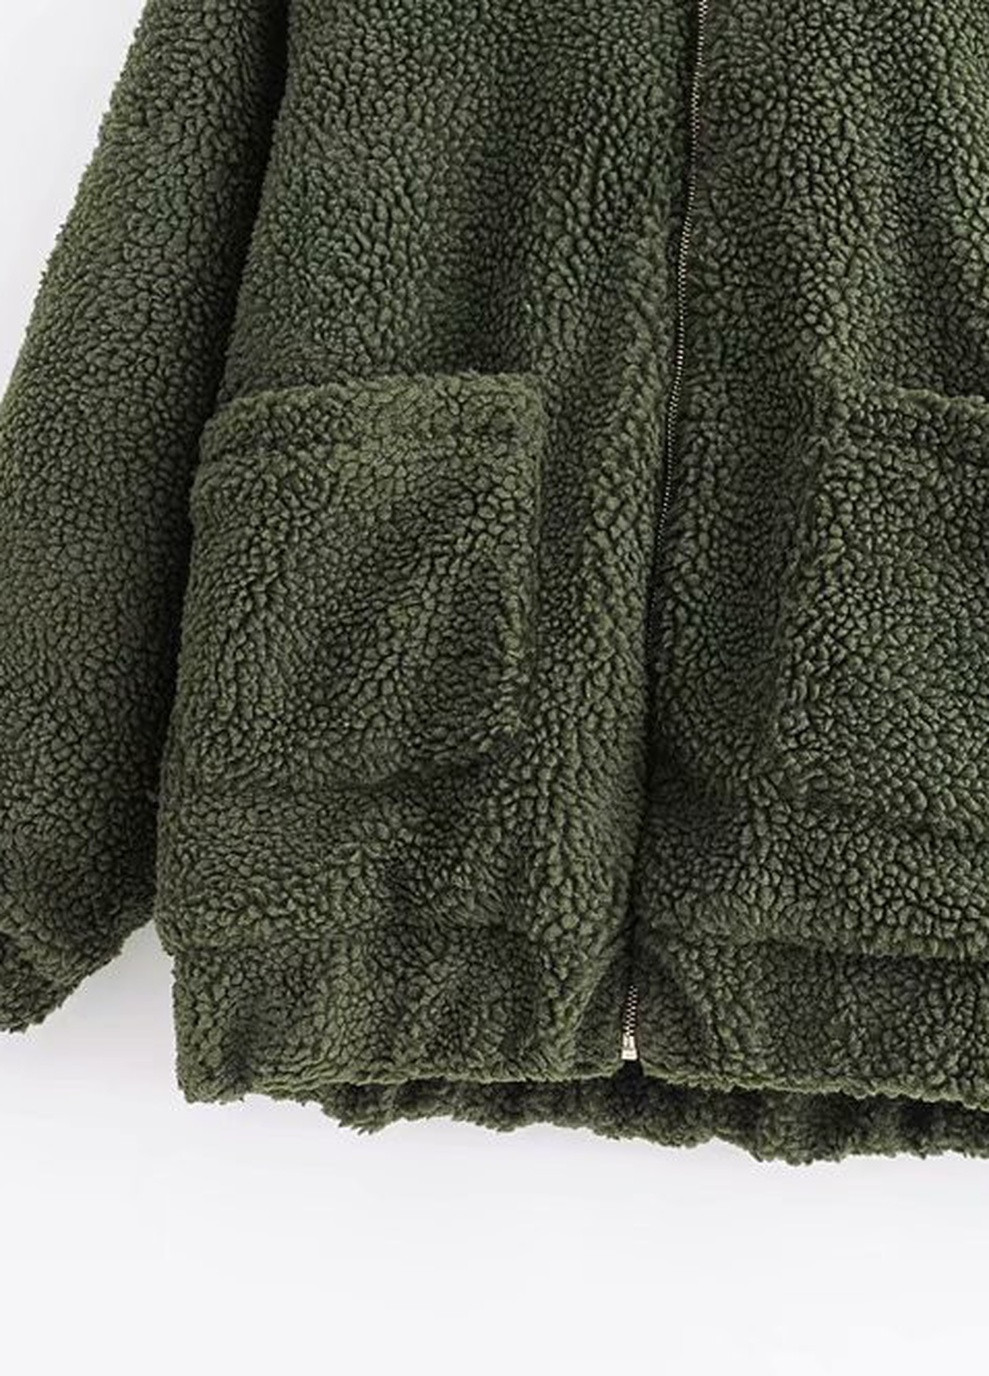 Зелена демісезонна куртка жіноча з штучного хутра fluffy, зелений Berni Fashion 55580